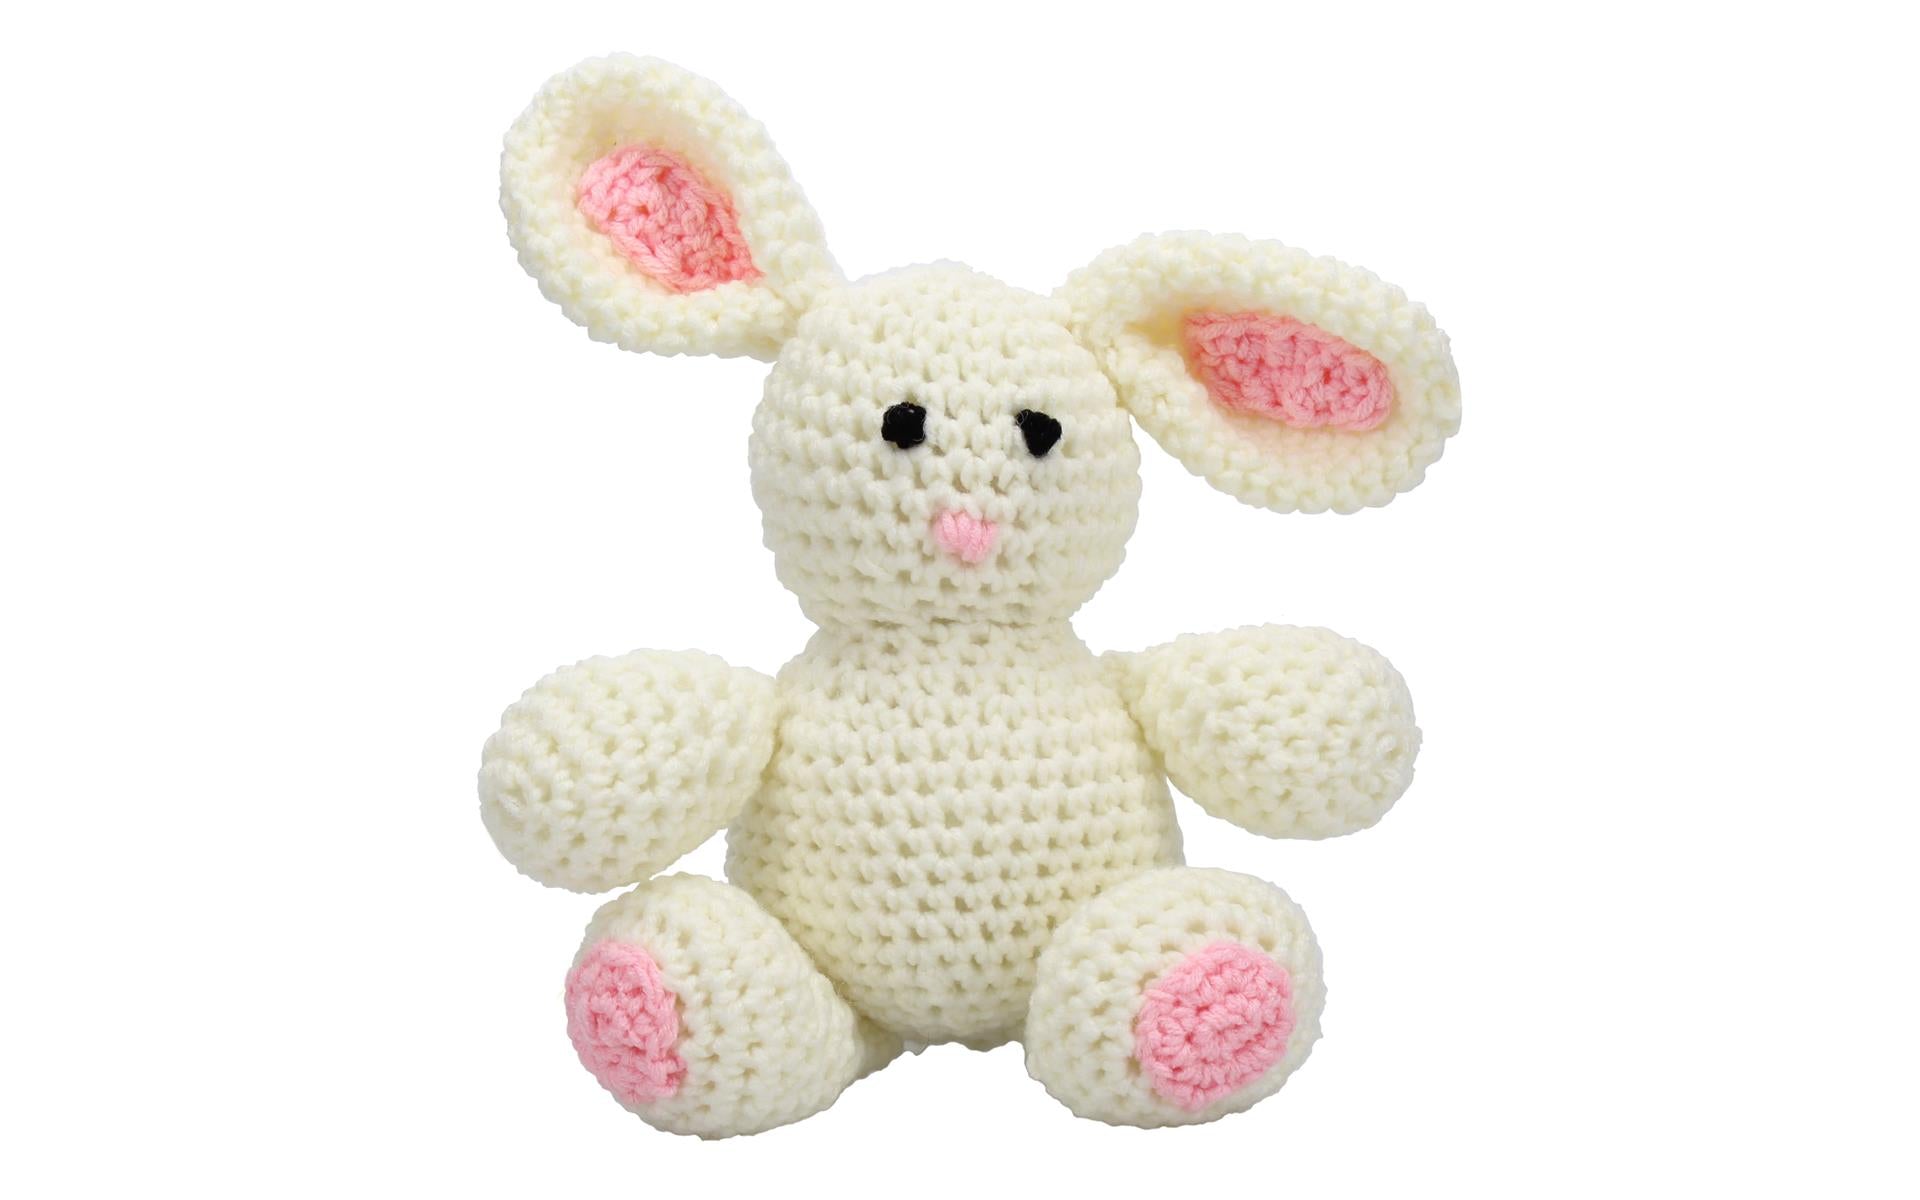 Bunny doll crochet kit, Crochet kit, Crochet materials, Amig - Inspire  Uplift